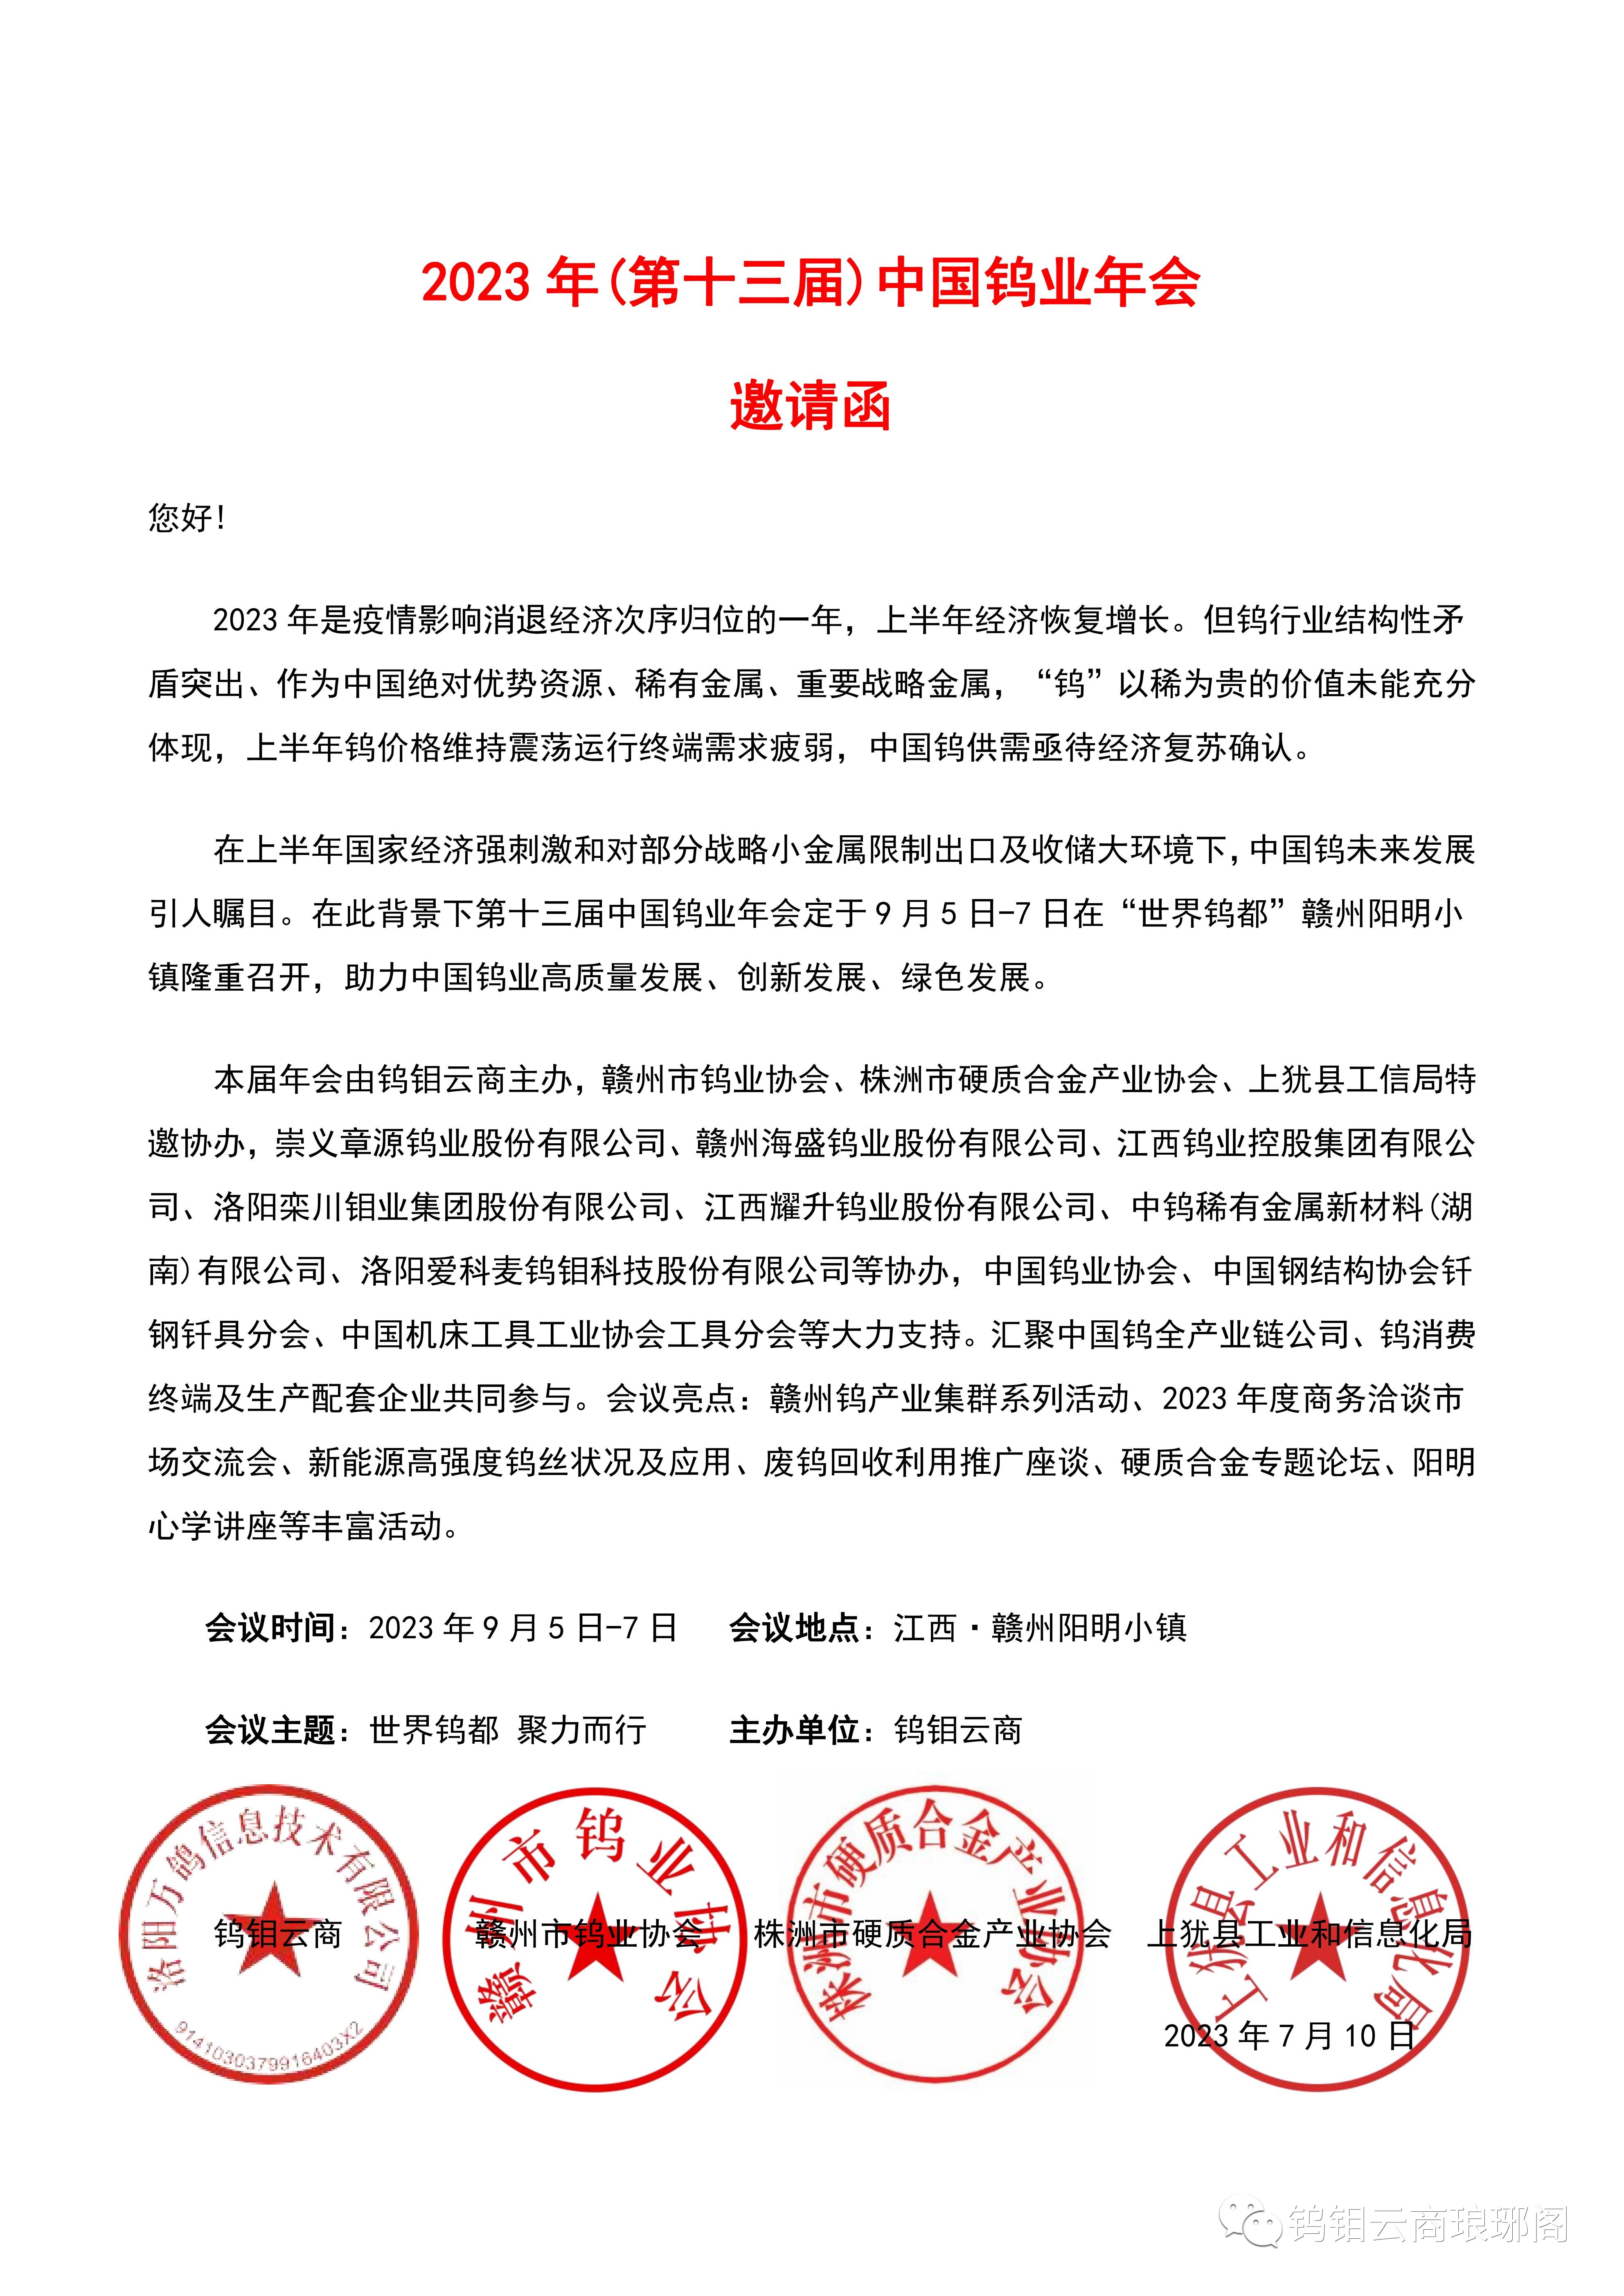 2023年(第十三届)中国钨业年会